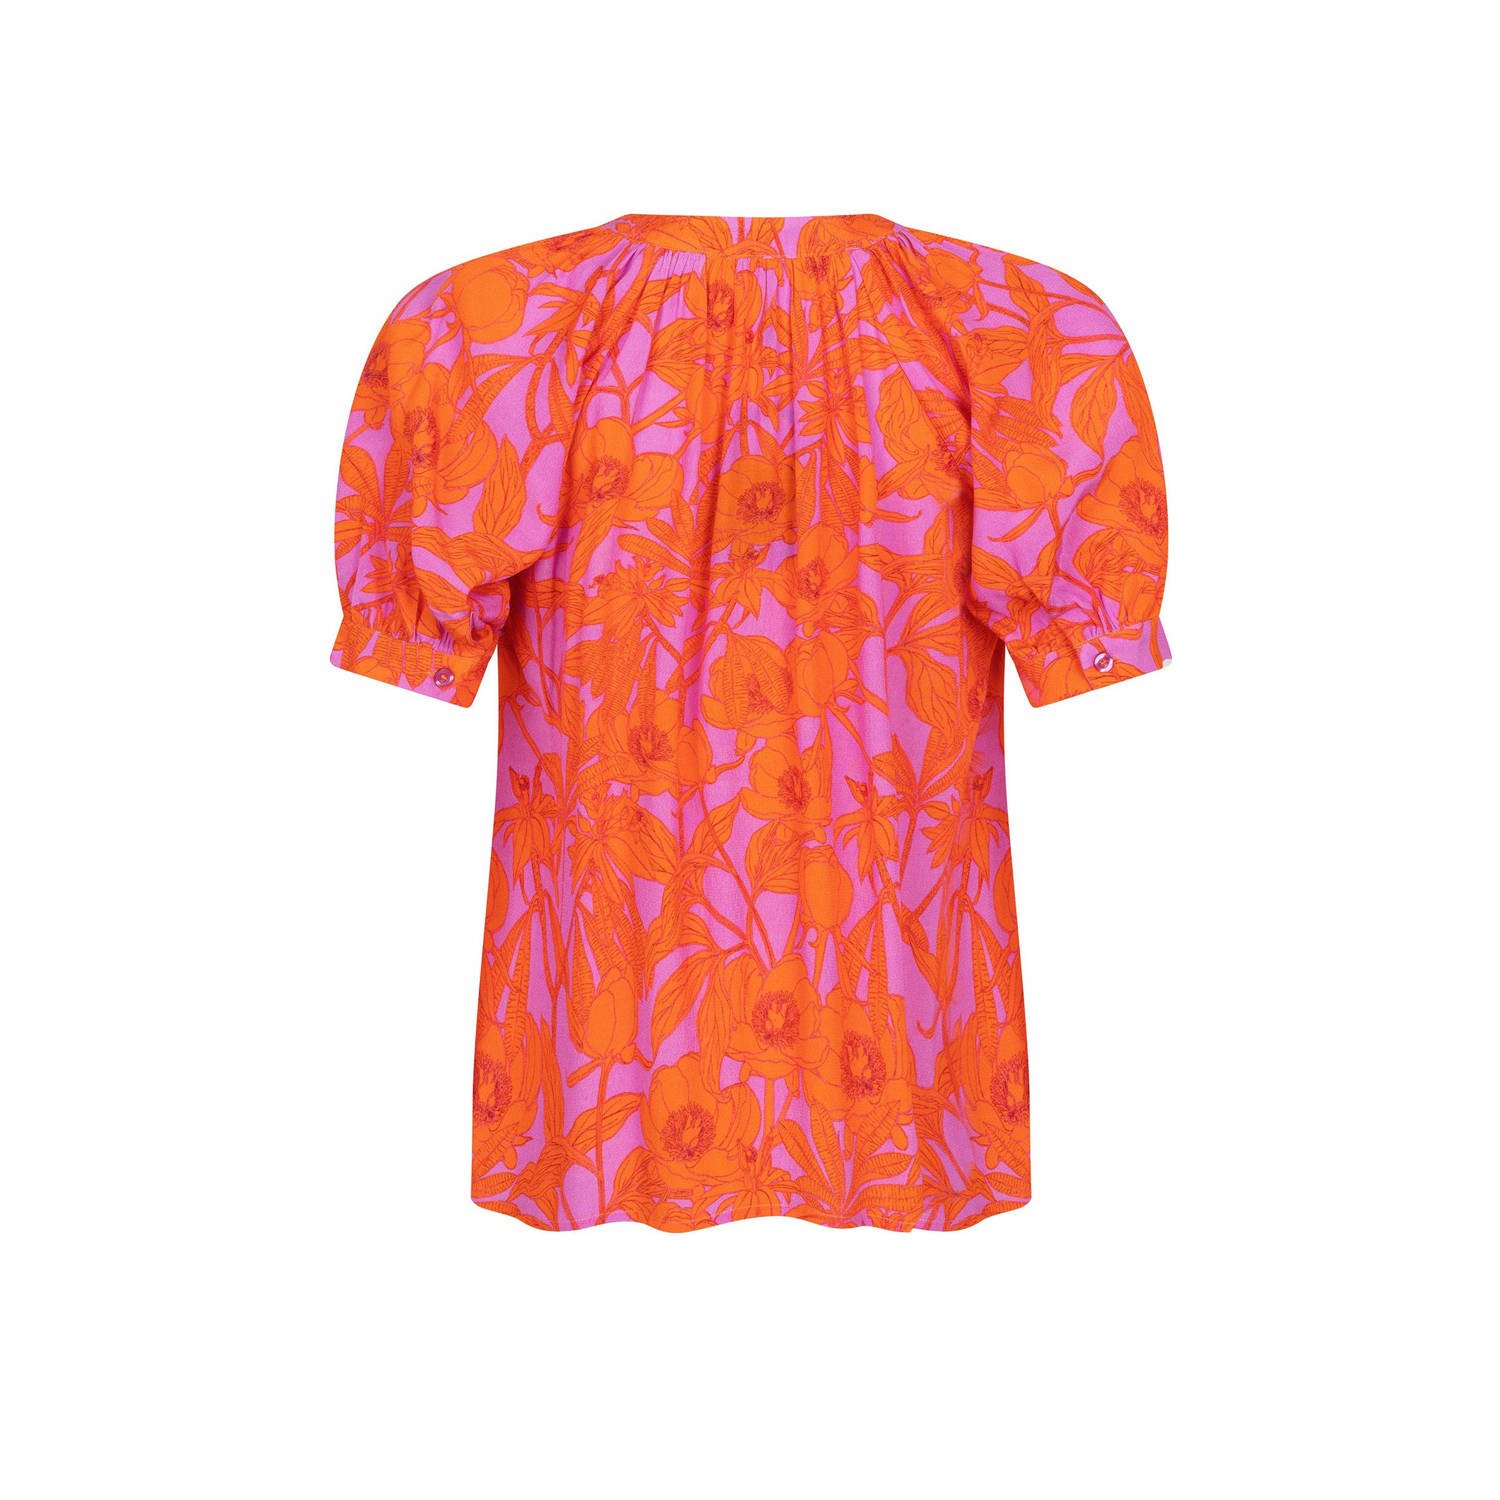 Ydence gebloemde blouse Ayla lila oranje